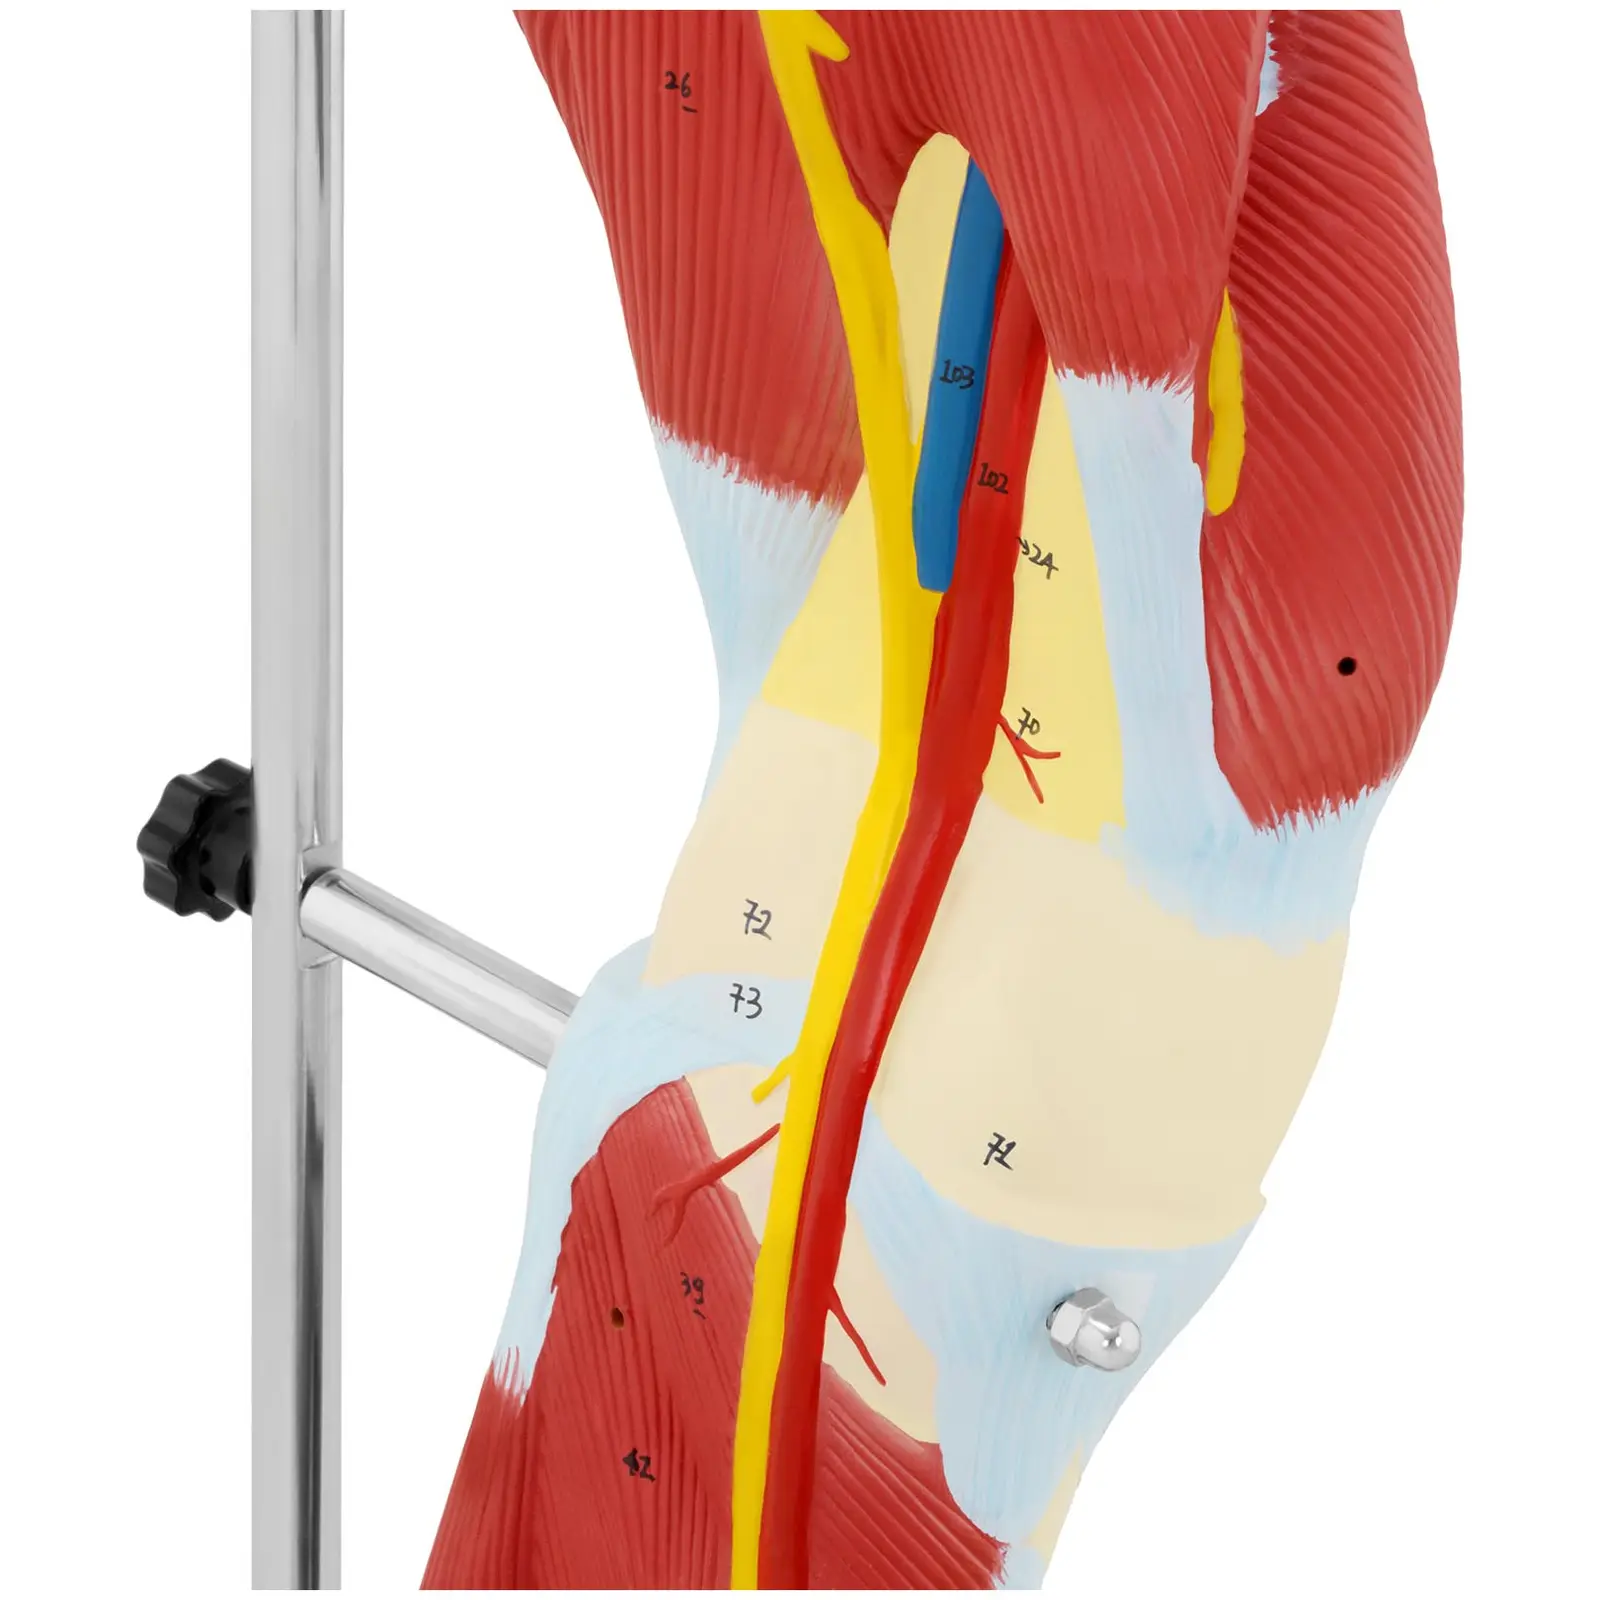 Maquette anatomique des muscles de la jambe - En couleurs